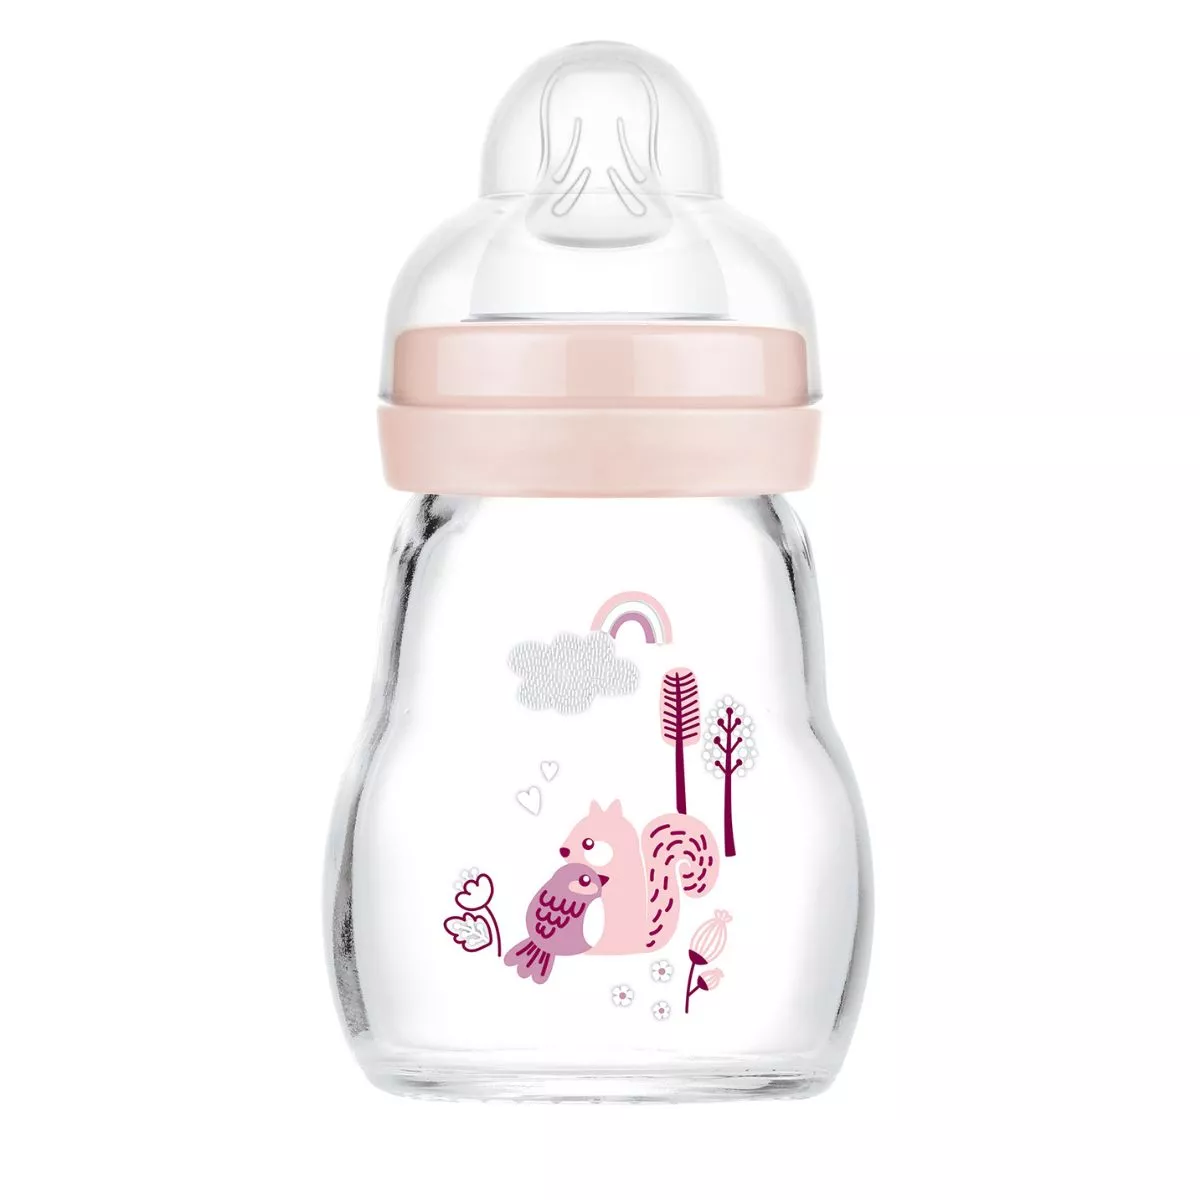 MAM Feel Good 170ml Glass Baby Bottle 0+ months, single pack